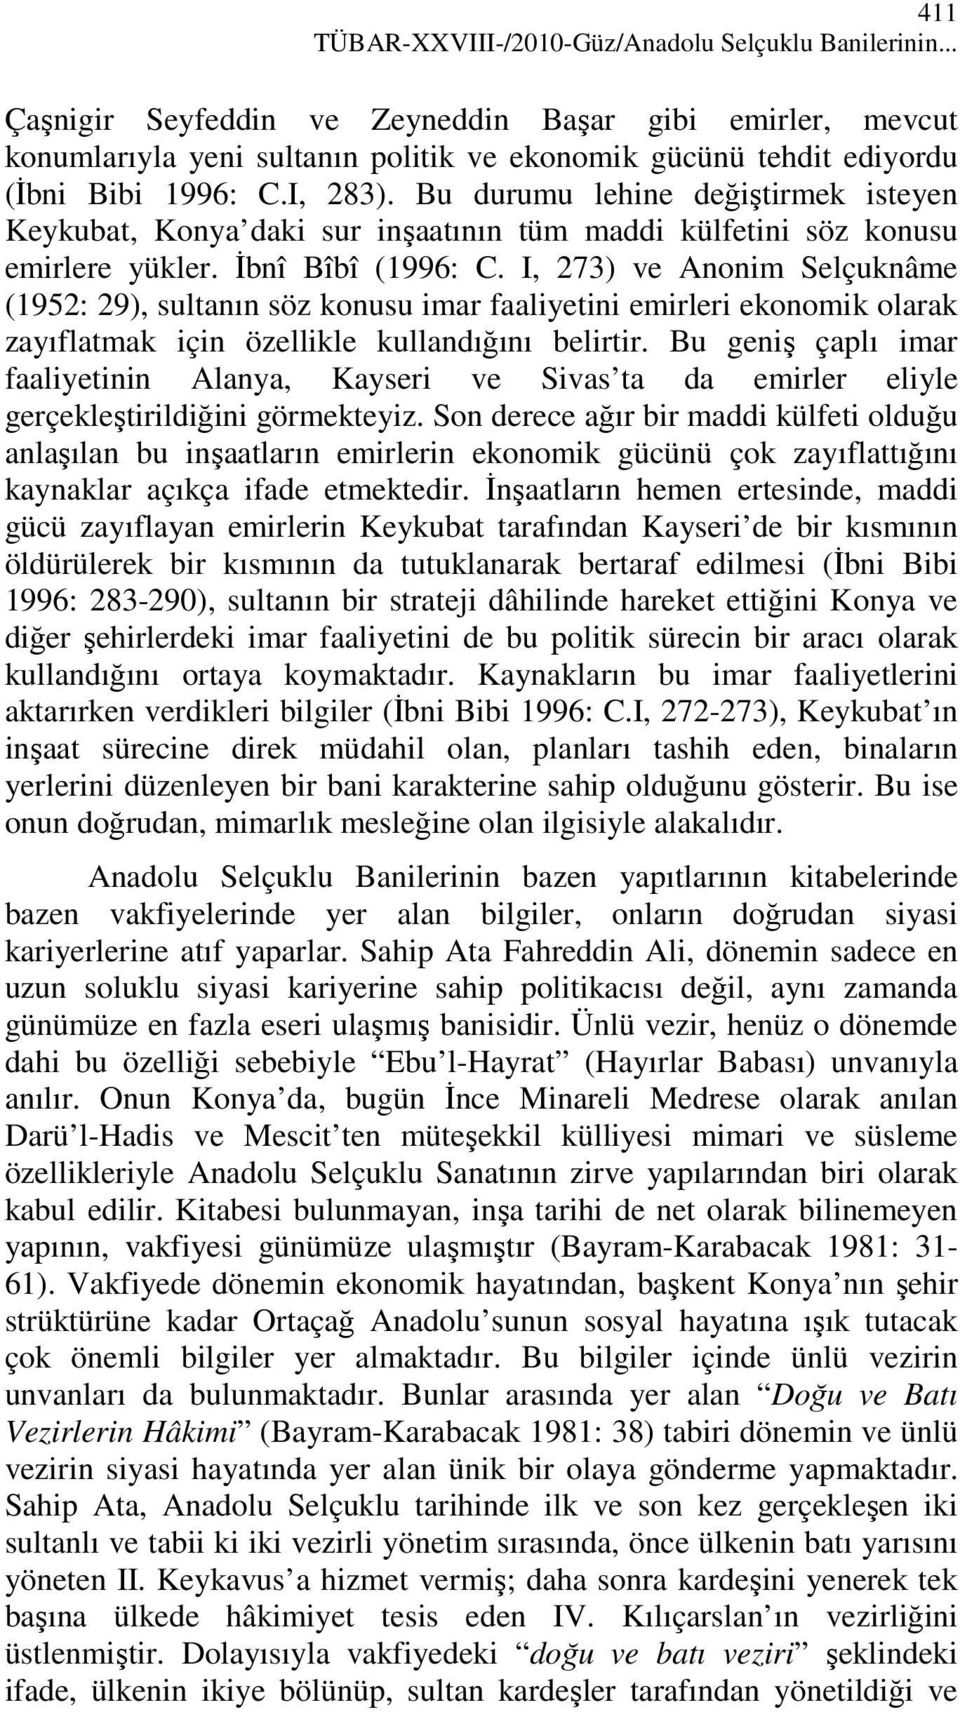 Bu durumu lehine değiştirmek isteyen Keykubat, Konya daki sur inşaatının tüm maddi külfetini söz konusu emirlere yükler. Đbnî Bîbî (1996: C.